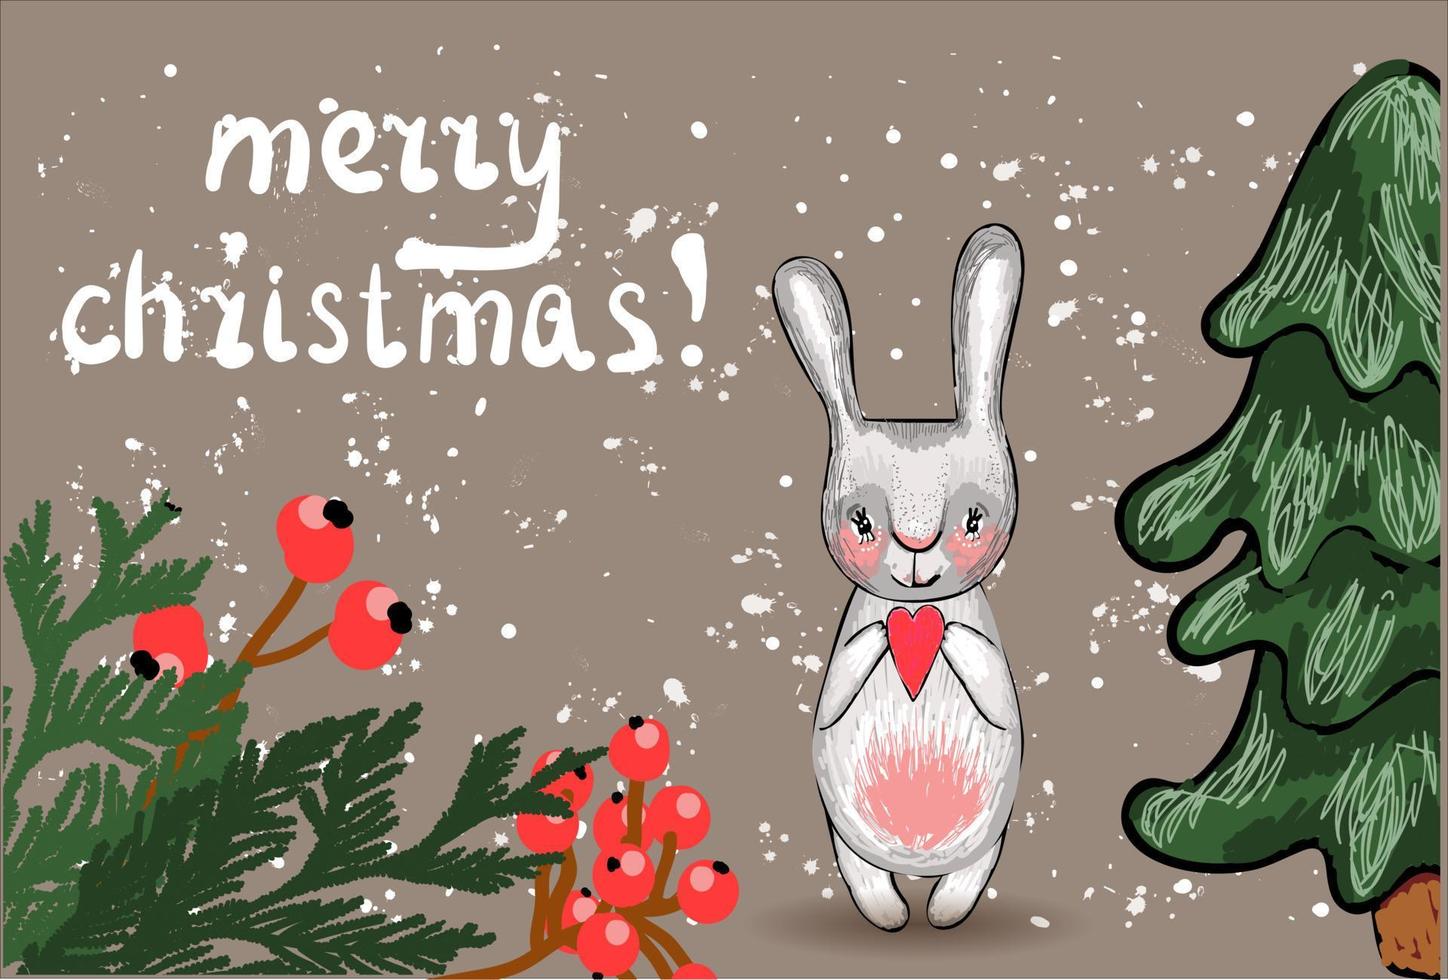 Feliz Navidad. animales de invierno fondo de nieve. tarjeta de año nuevo vector